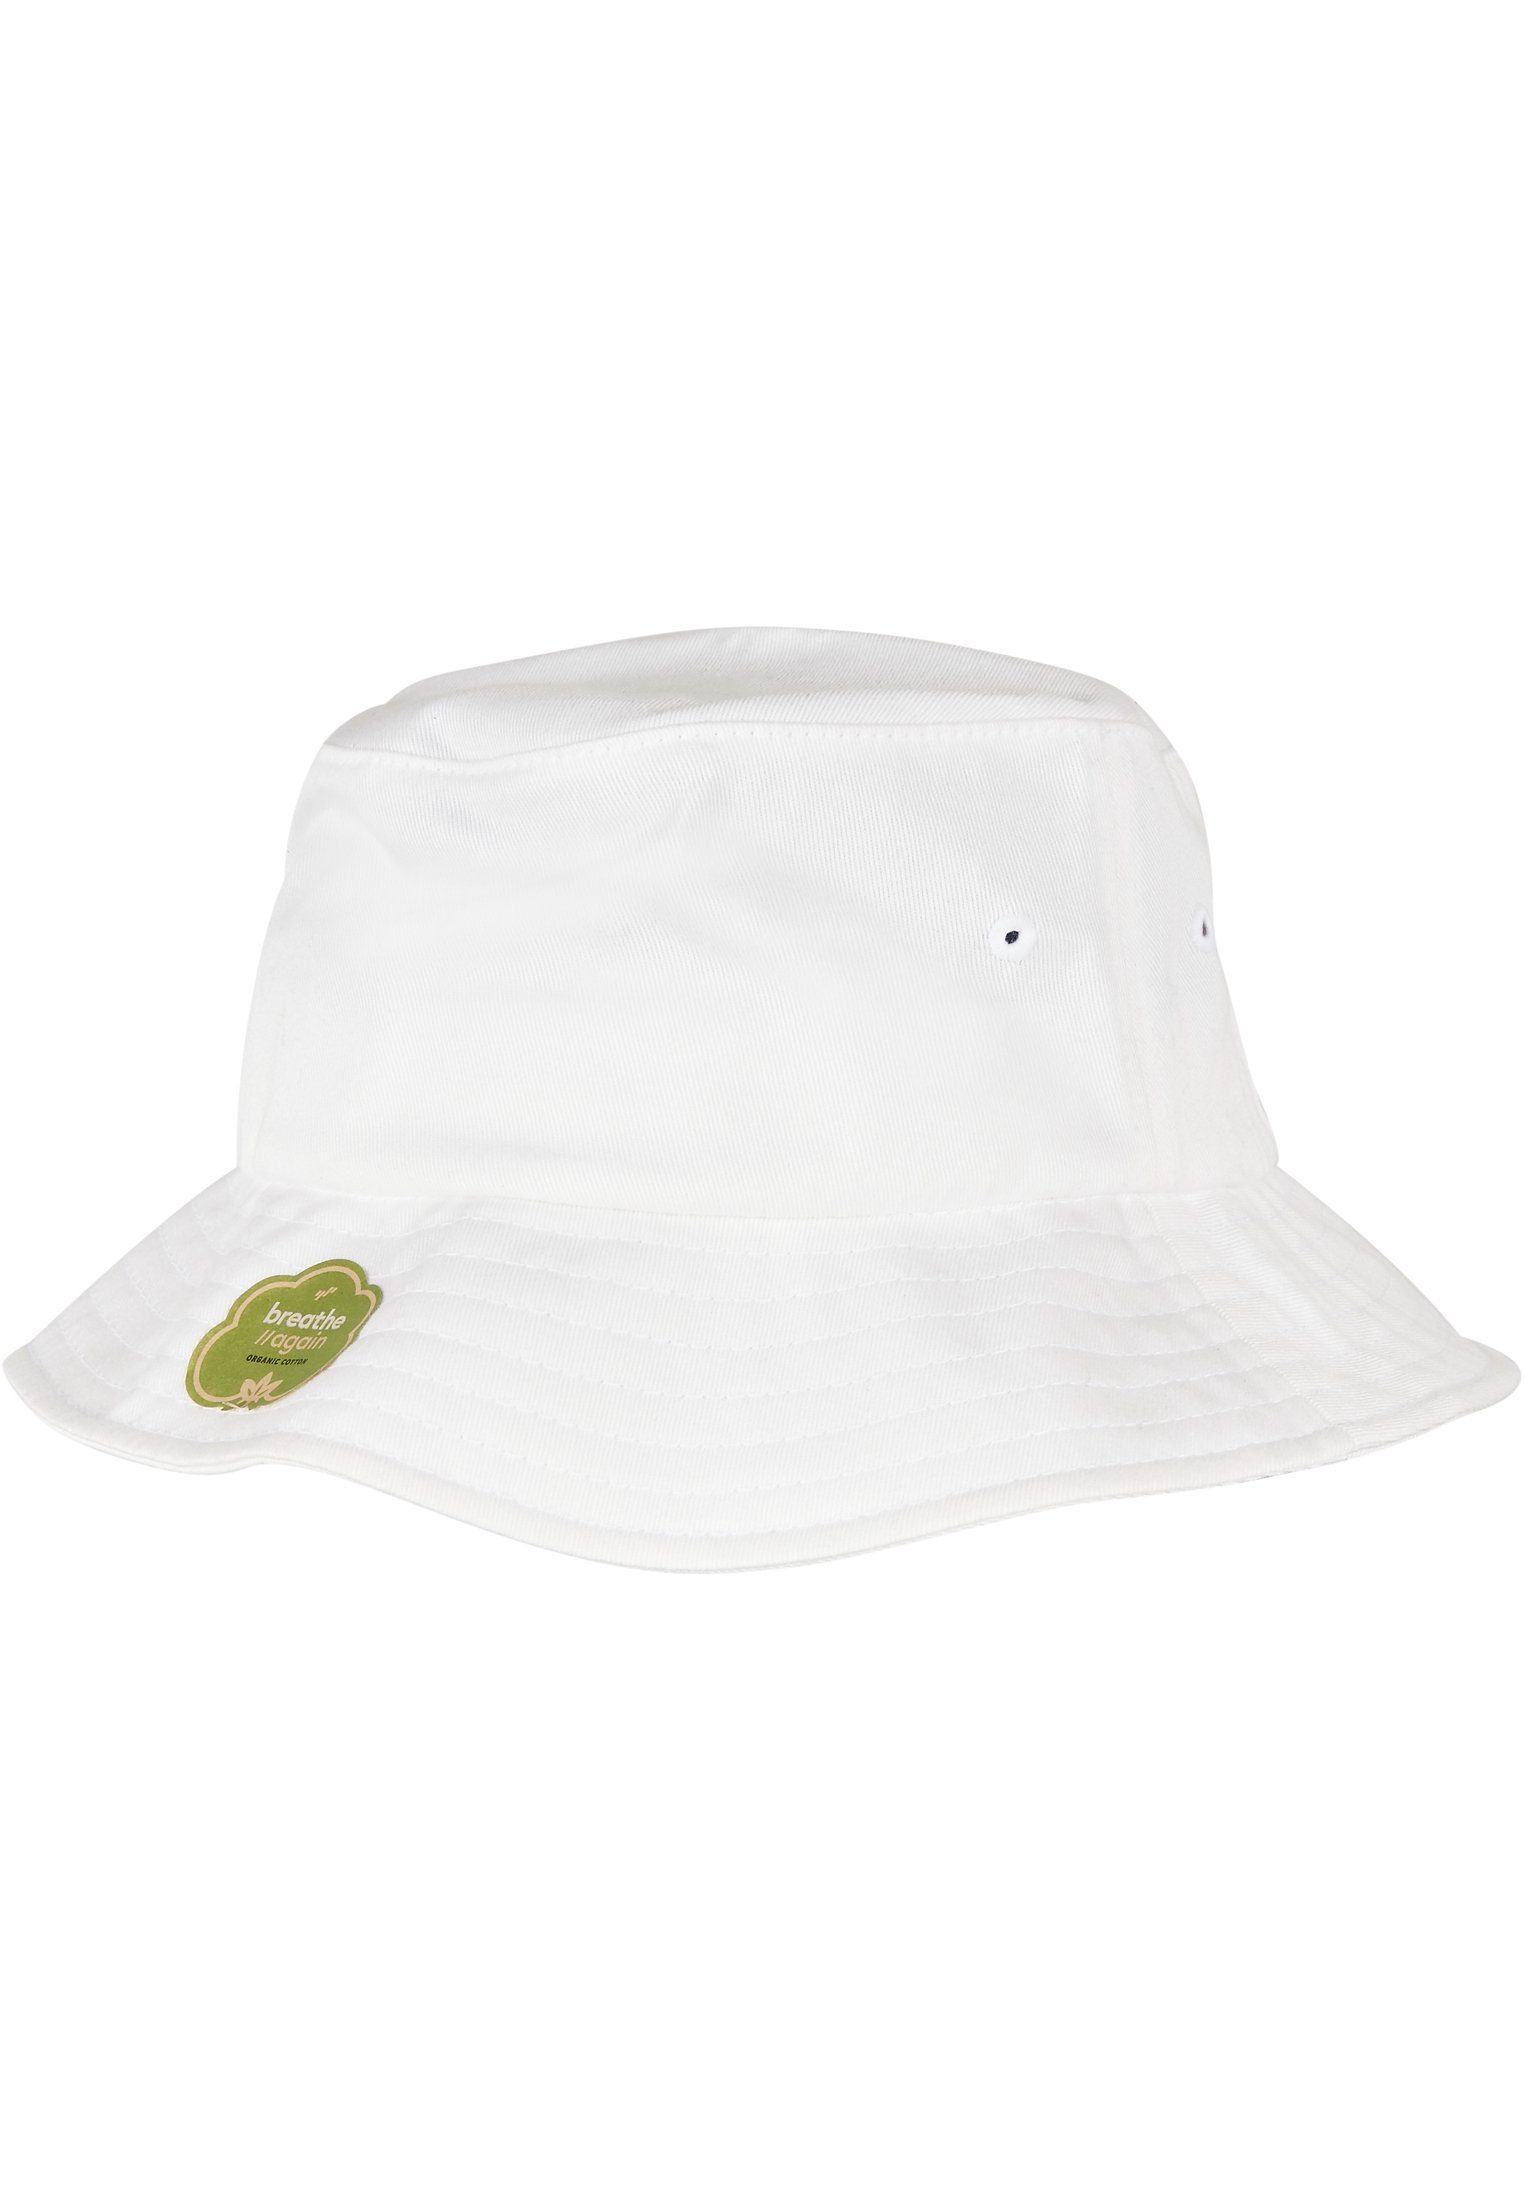 Flex Hat Flexfit Accessoires Cotton white Organic Cap Bucket